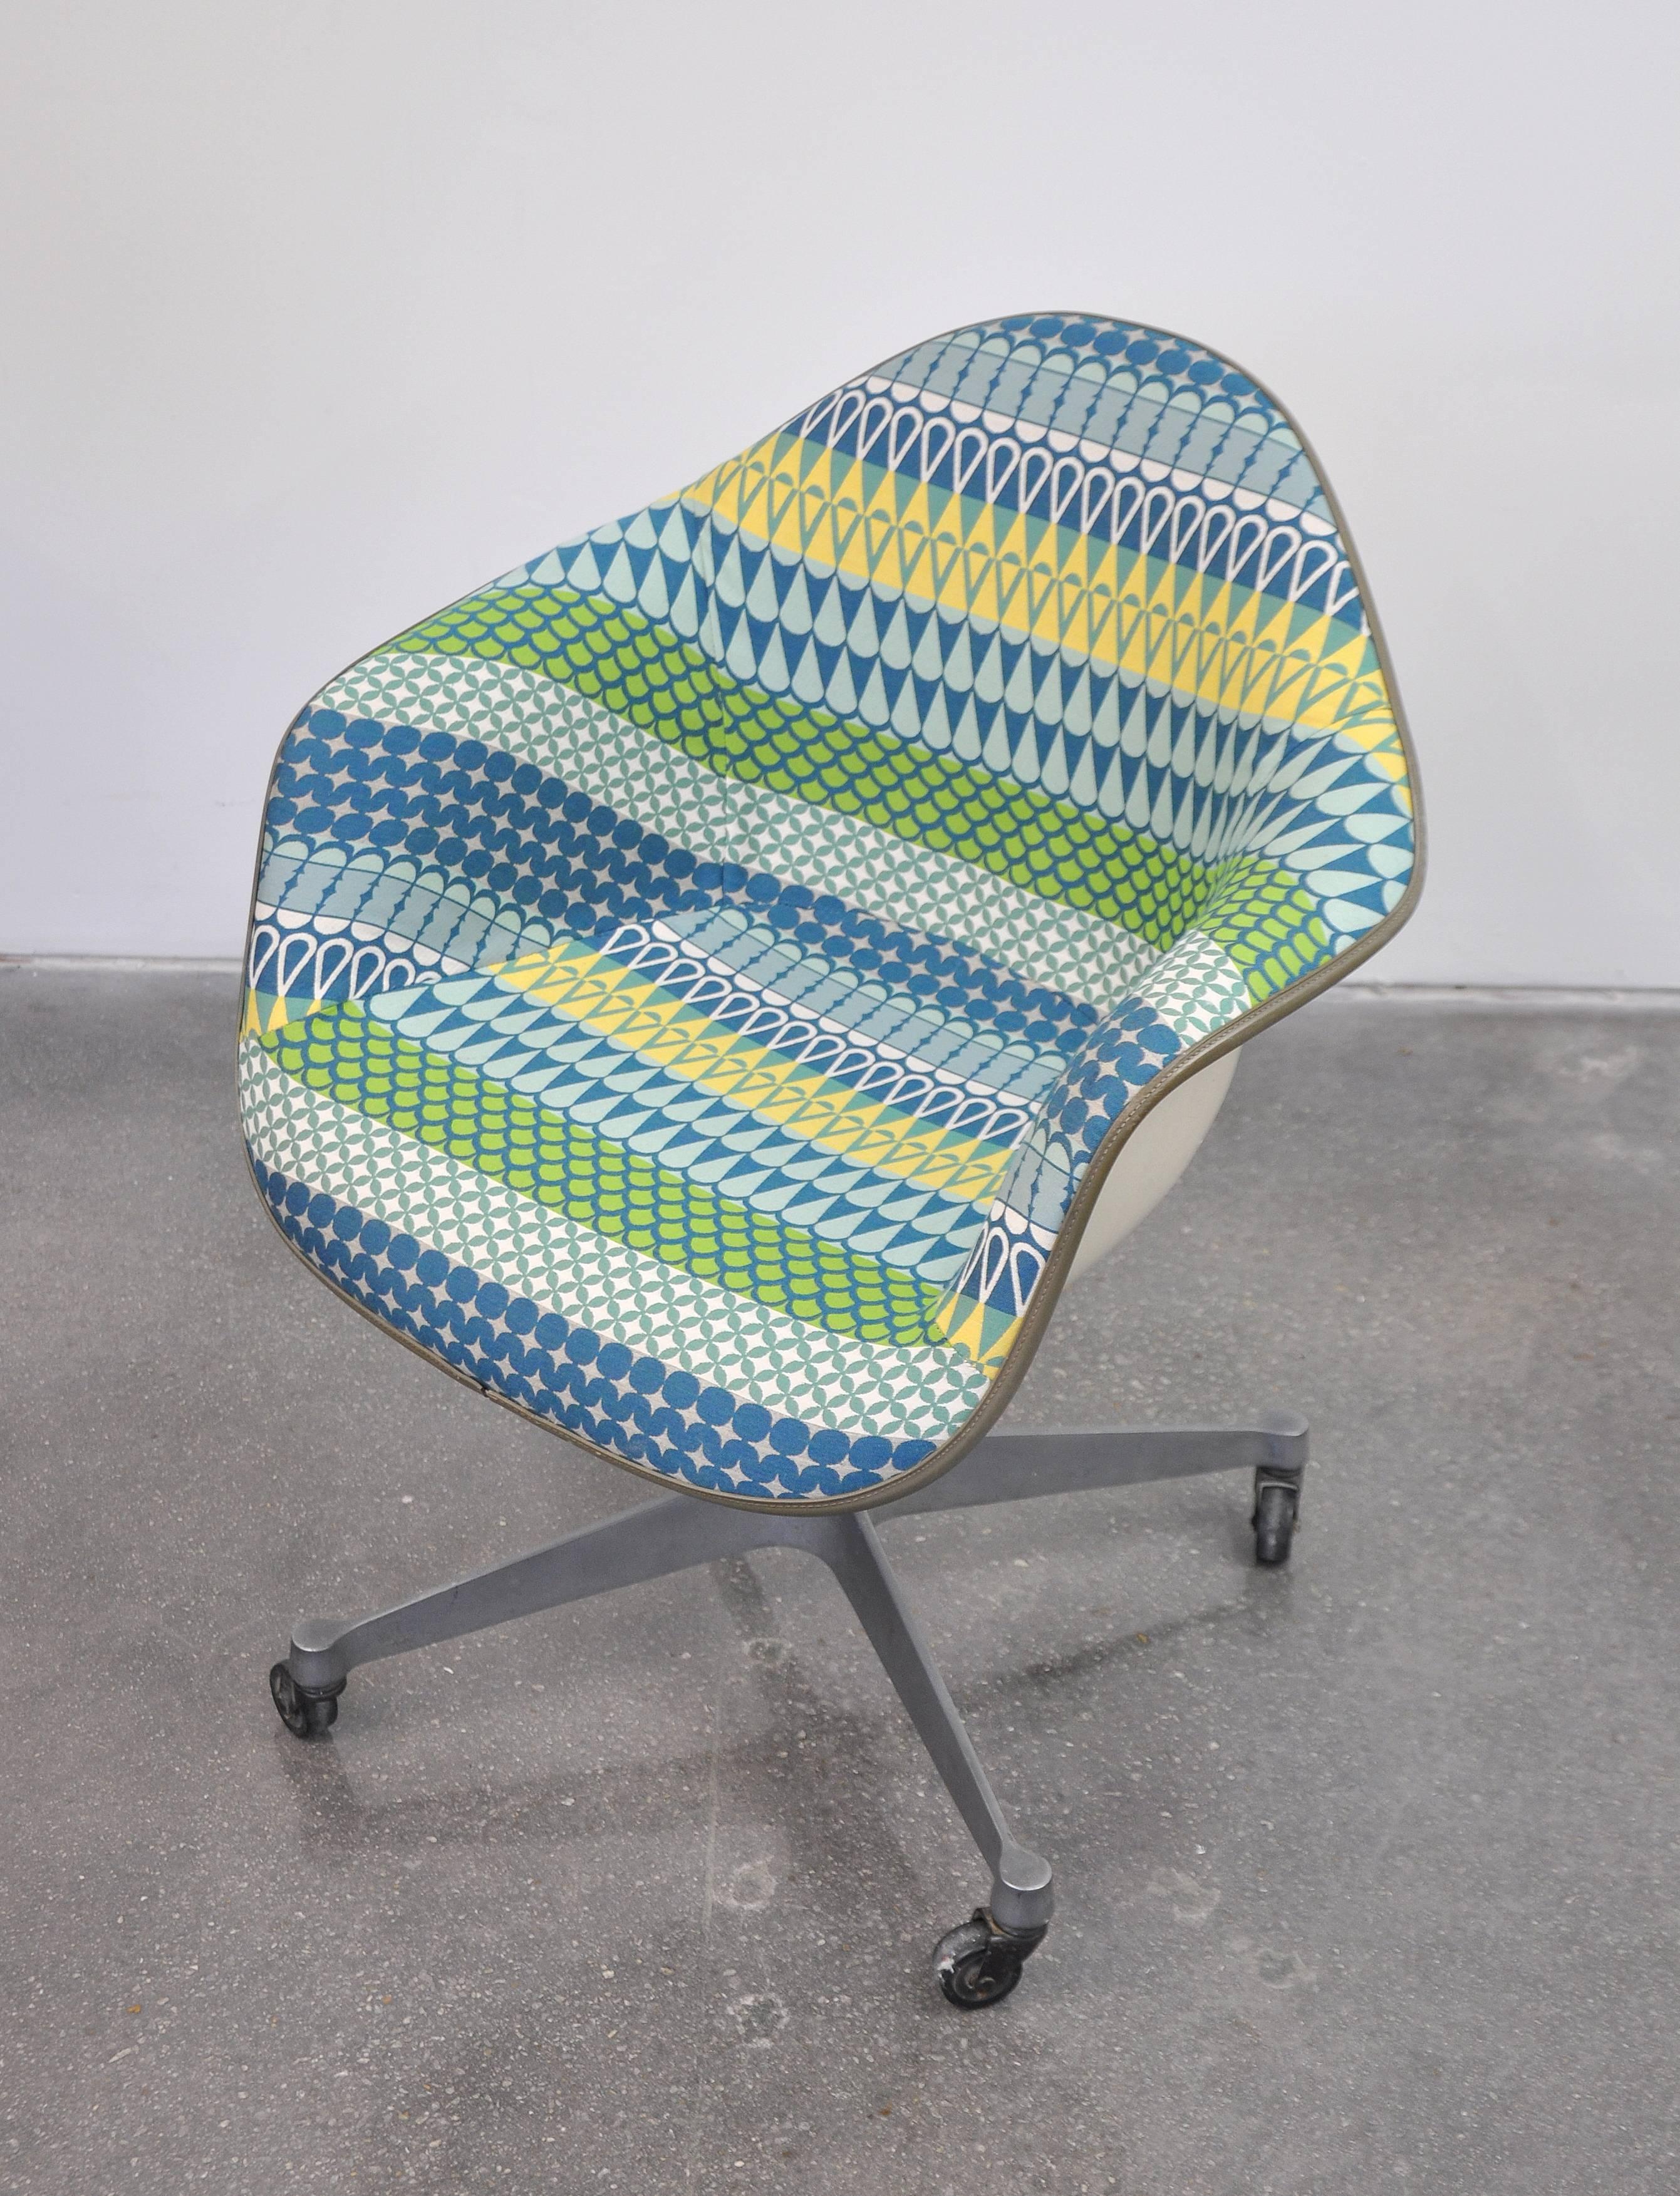 Eames Herman Miller Fiberglass Rolling Shell Chair Alexander Girard Style Fabric 1